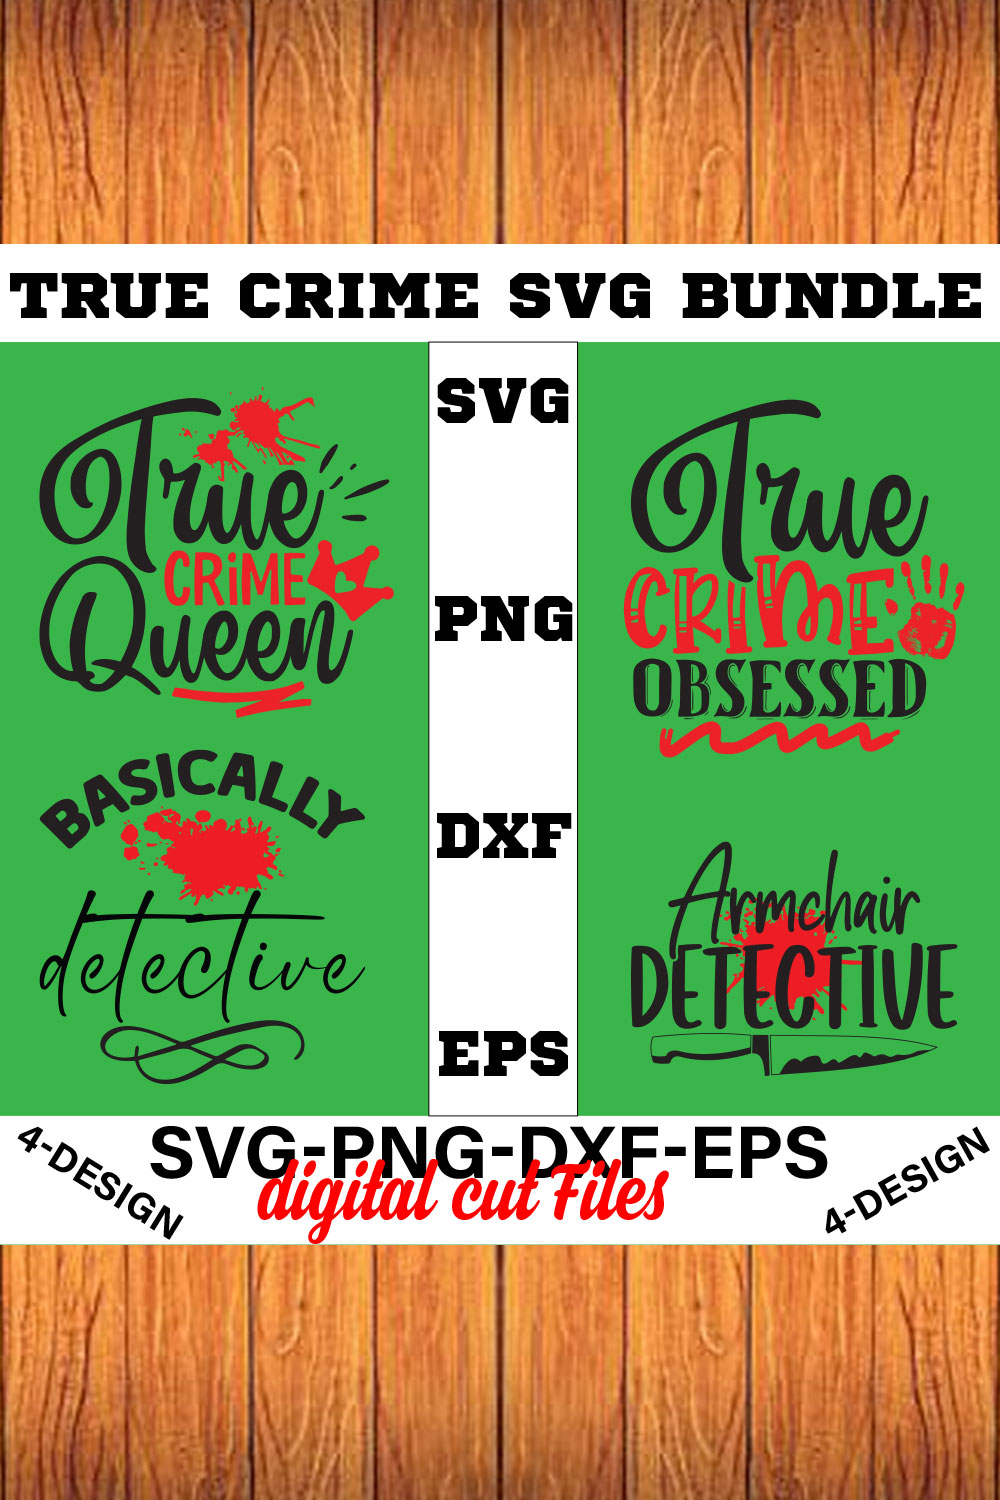 True Crime SVG Bundle Vol-03 pinterest preview image.